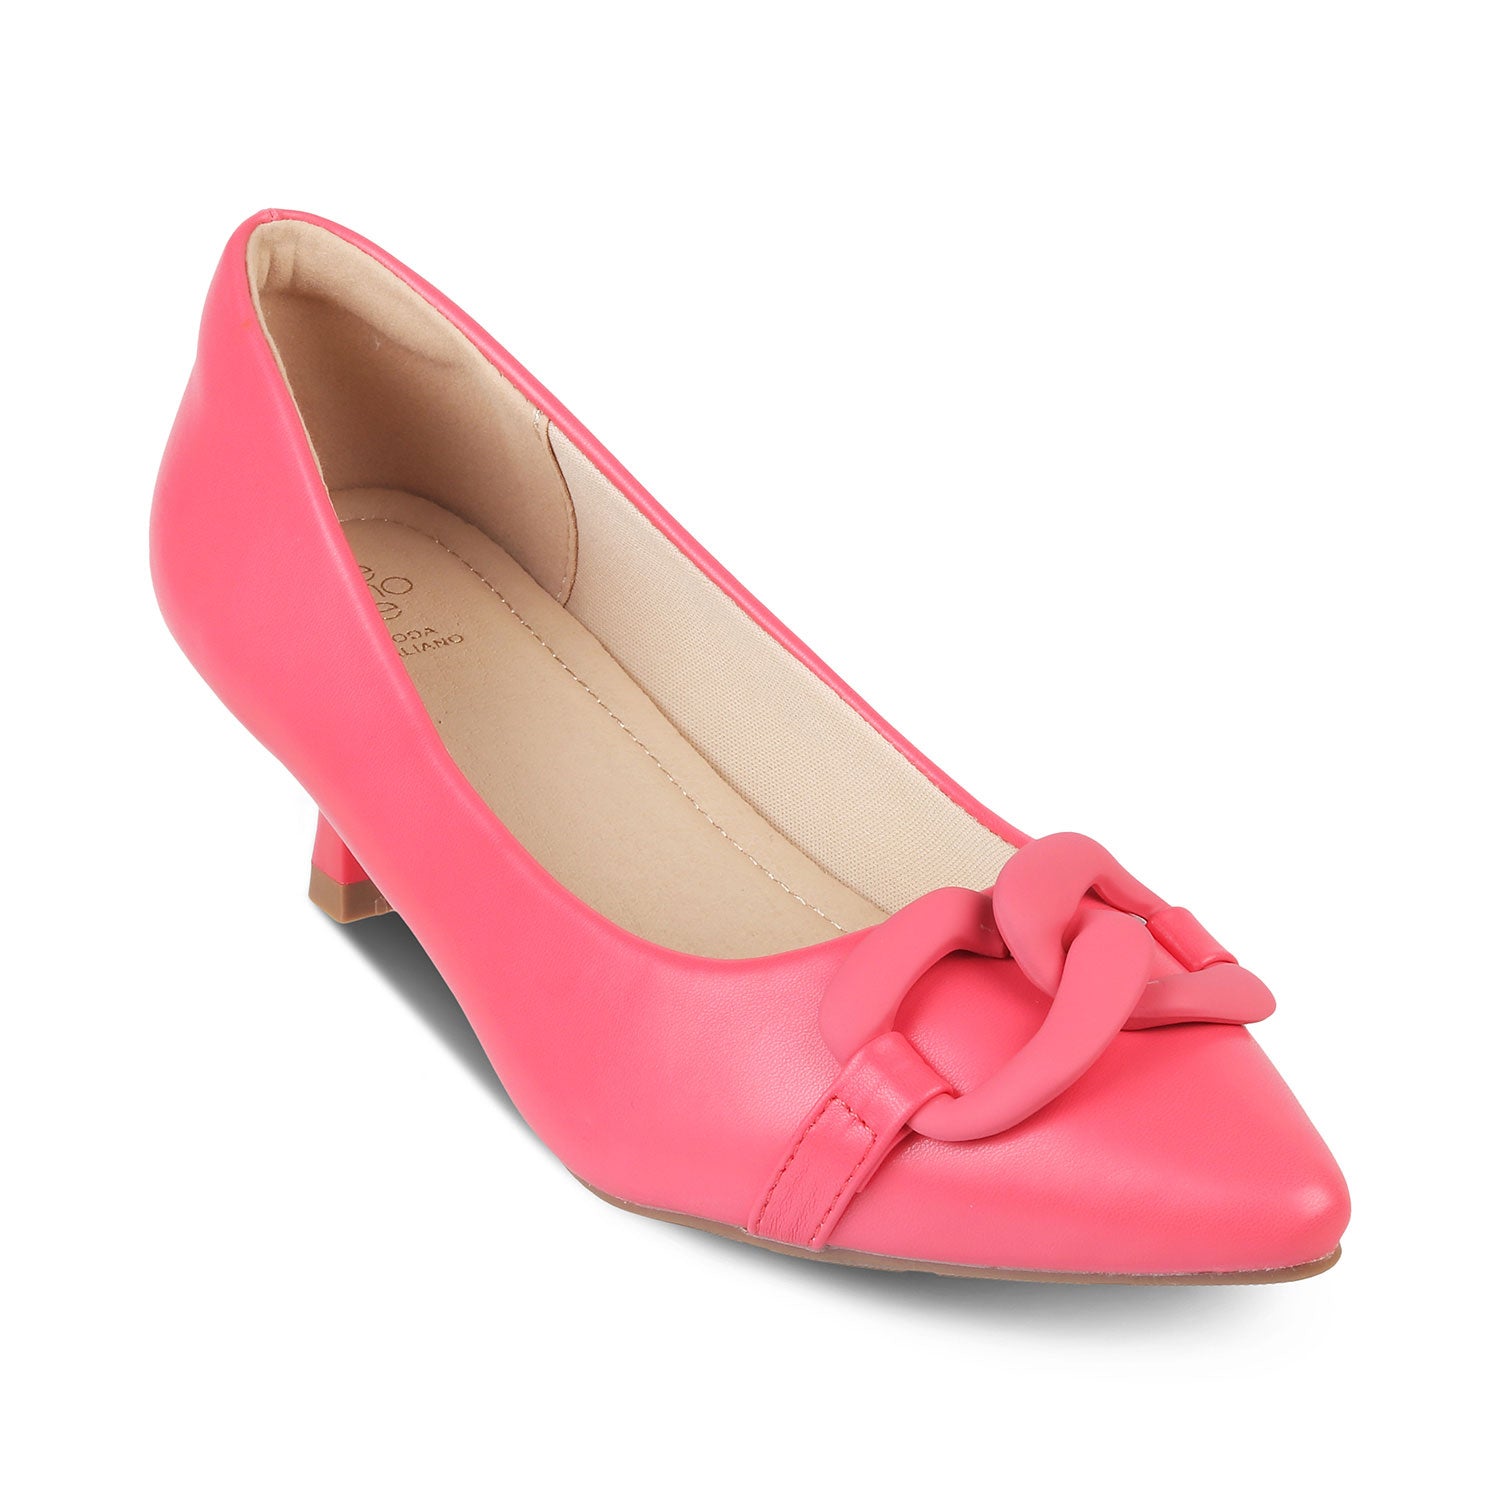 The Pesaro Pink Women's Kitten Heel Pumps Tresmode - Tresmode